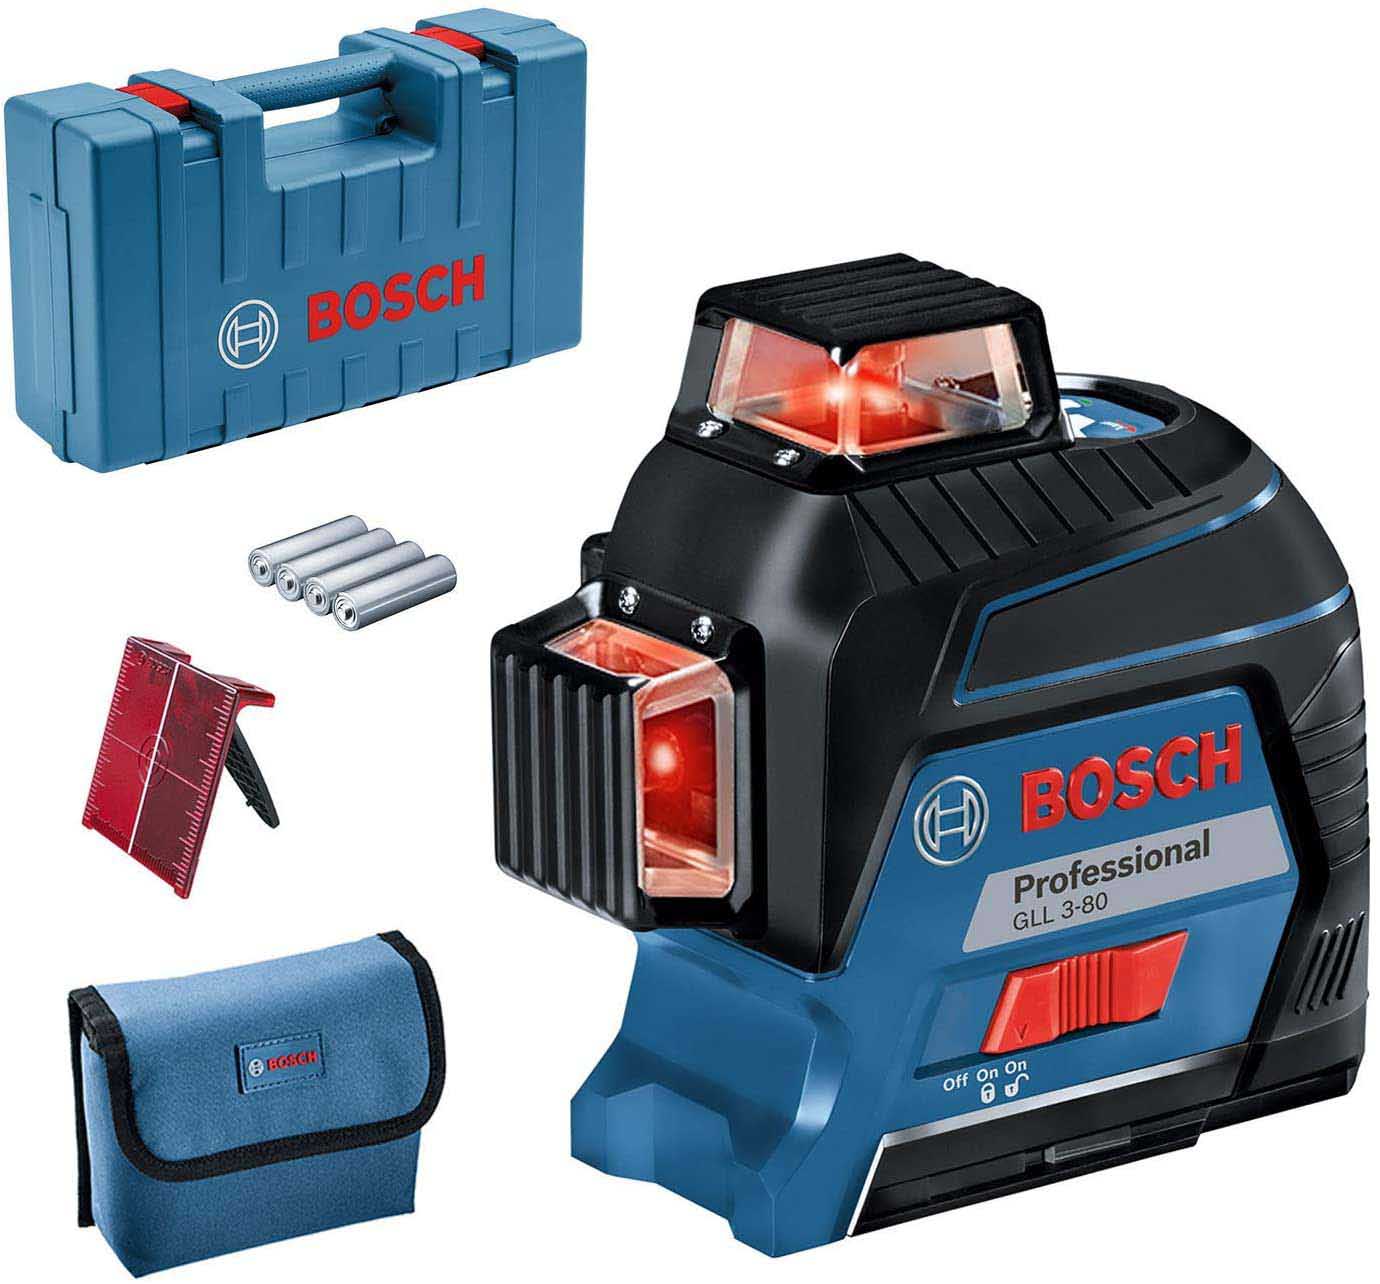 Bosch 4X laser level finder